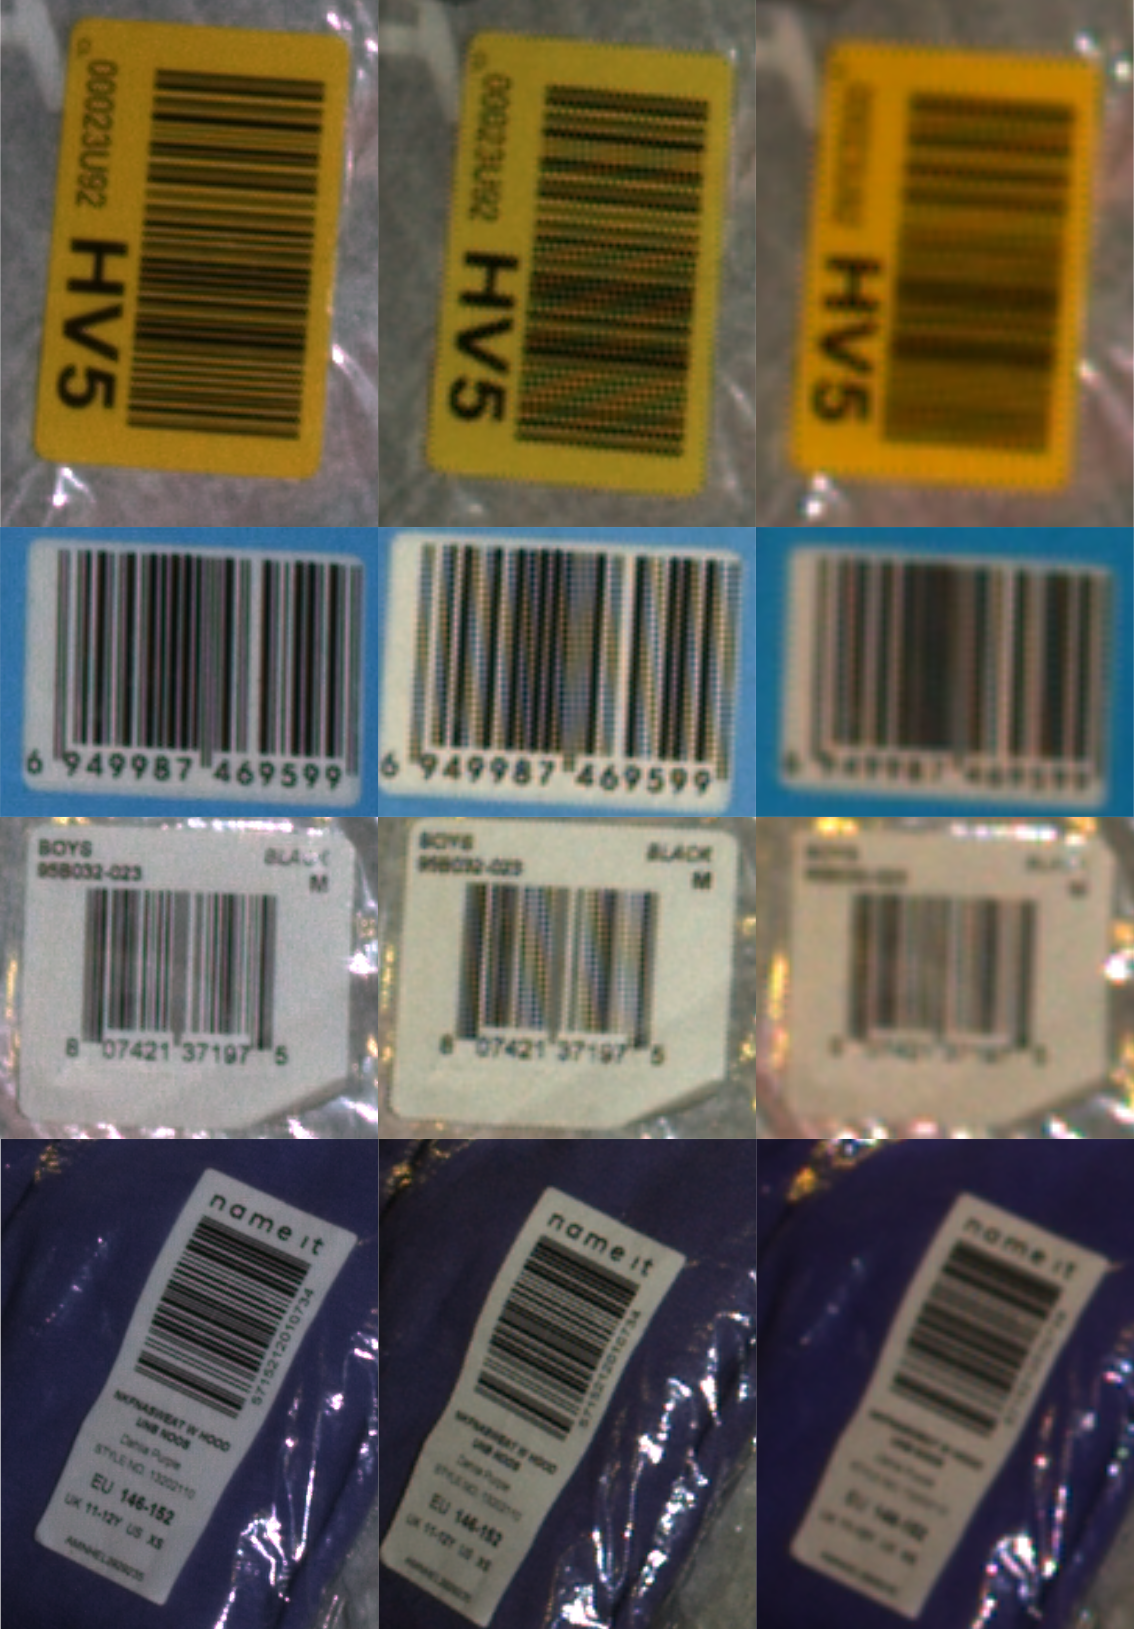 ../_images/2d_comparison_m130_medium_m70_barcodes.png